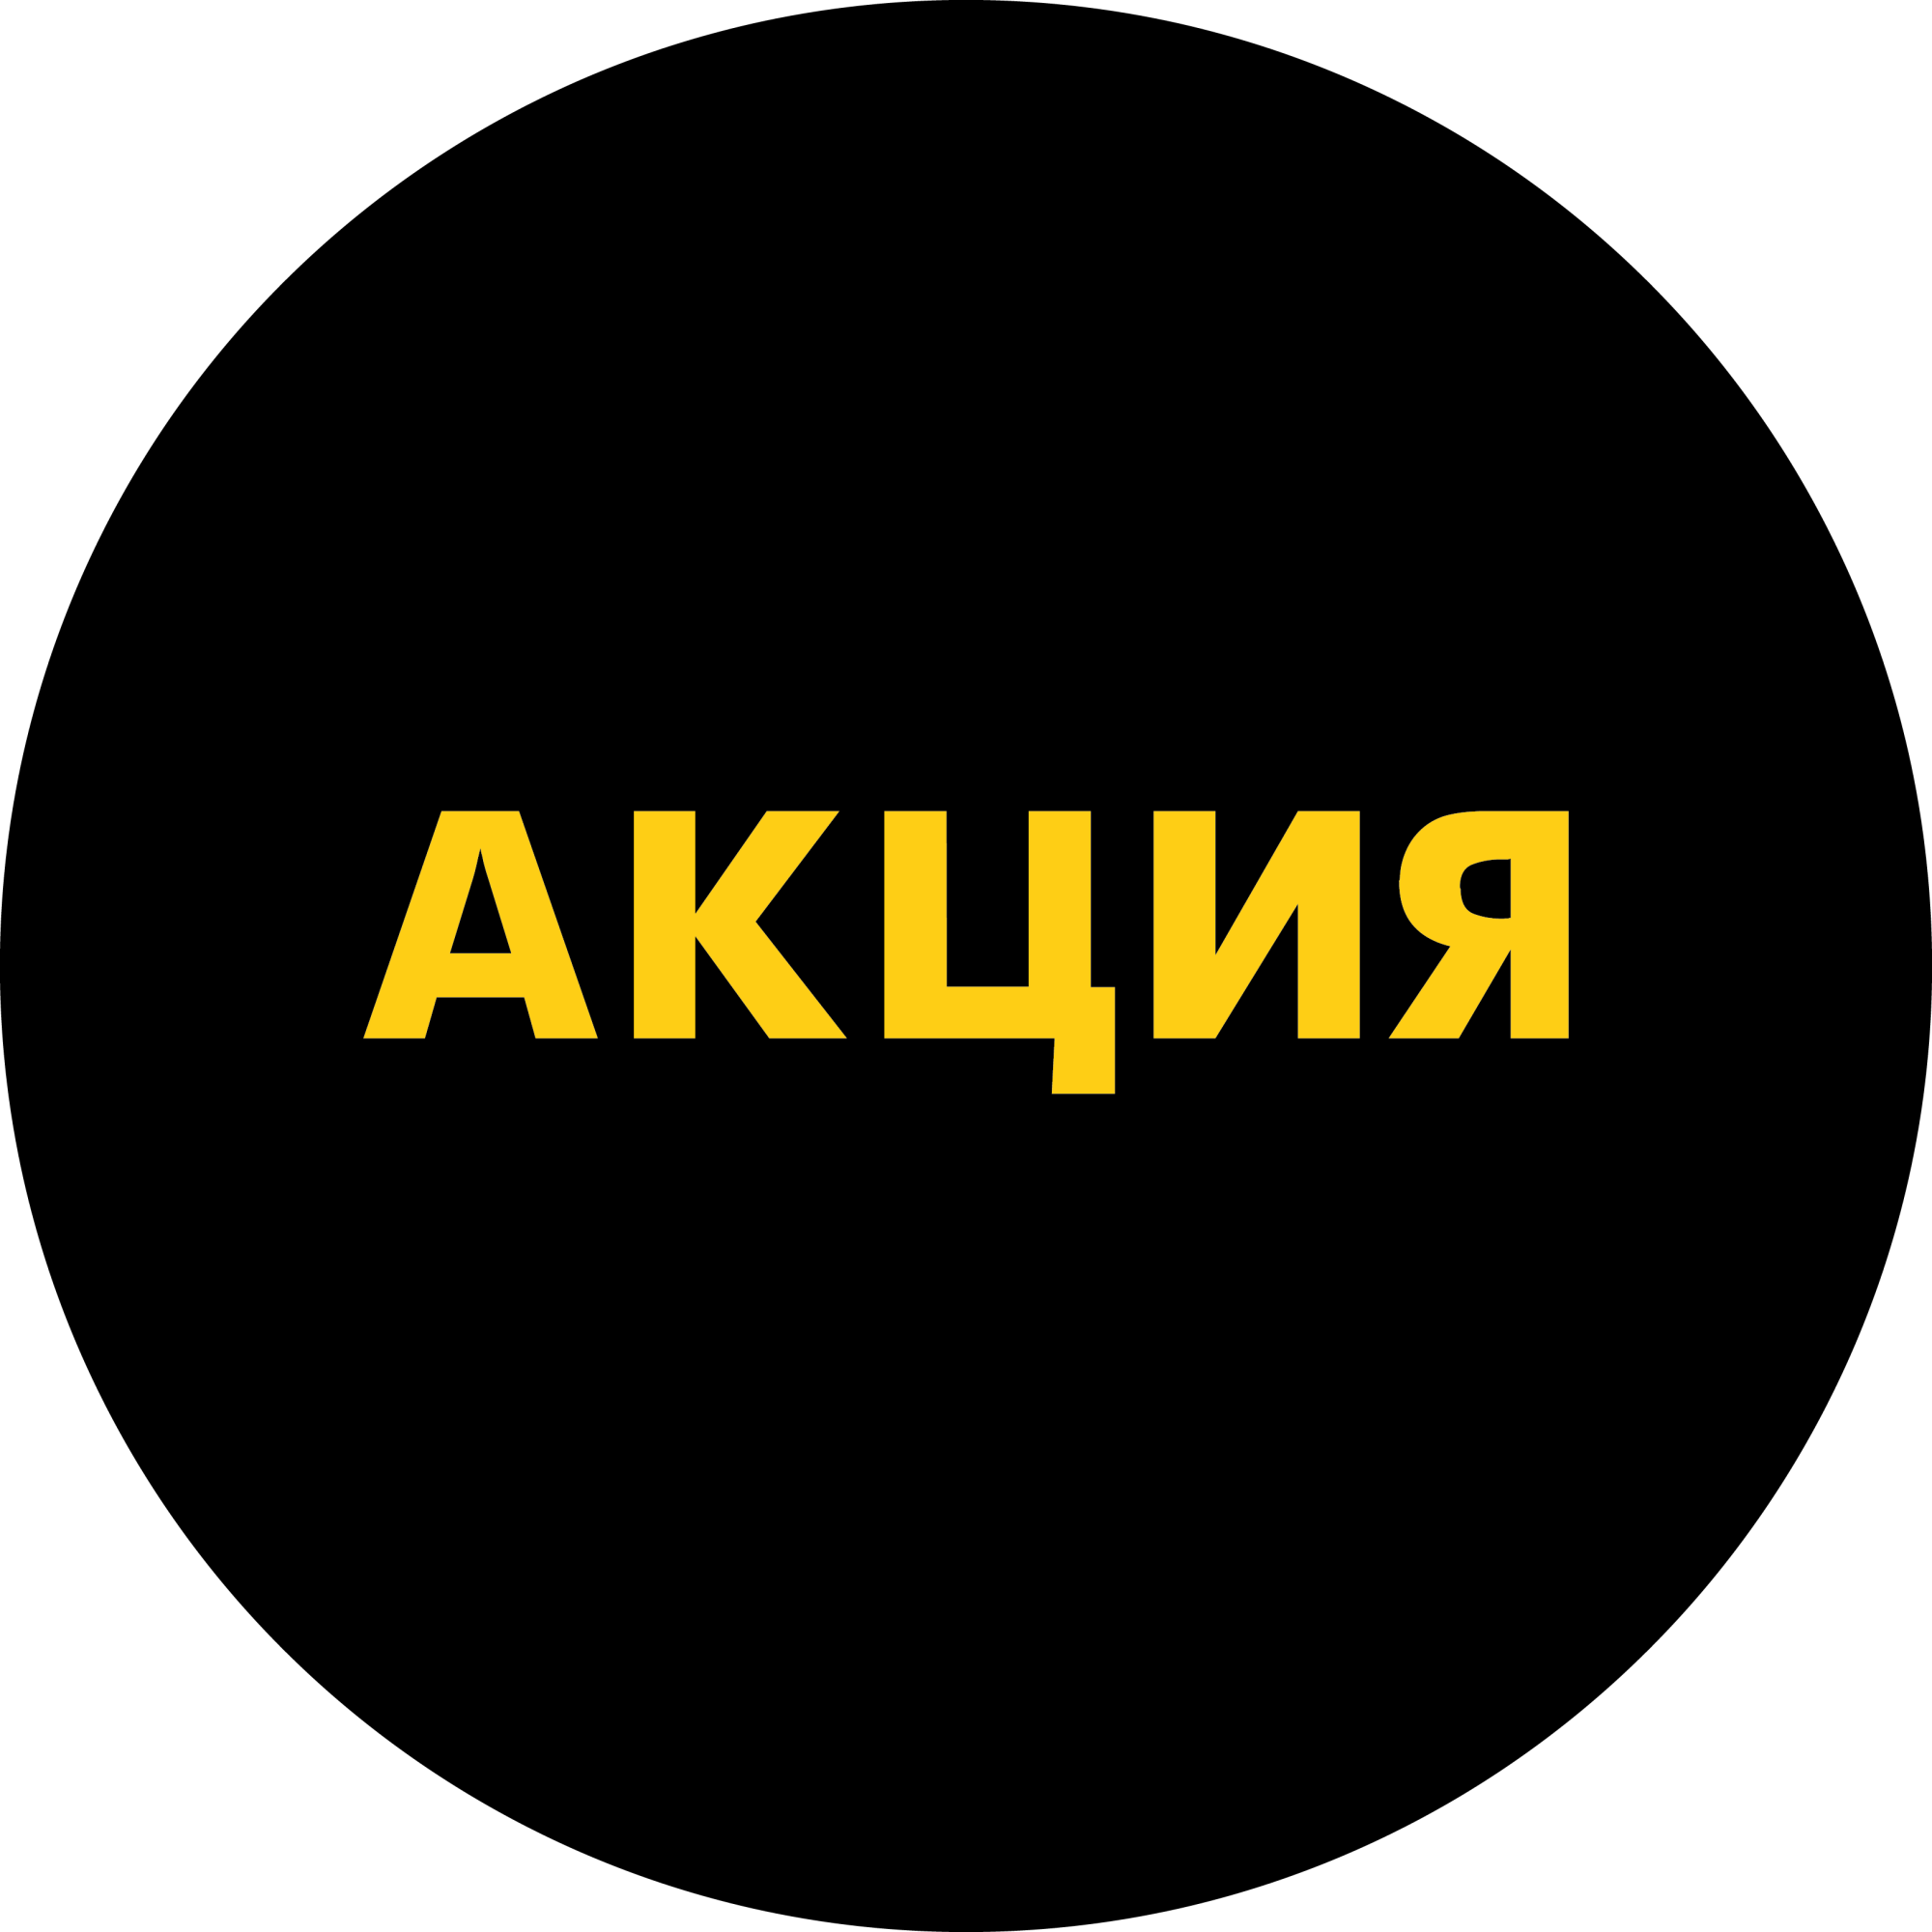 Этикетка самоклеящаяся "АКЦИЯ" d29мм, полипропилен,съемный клей (250шт),Желтый шрифт на черном фоне